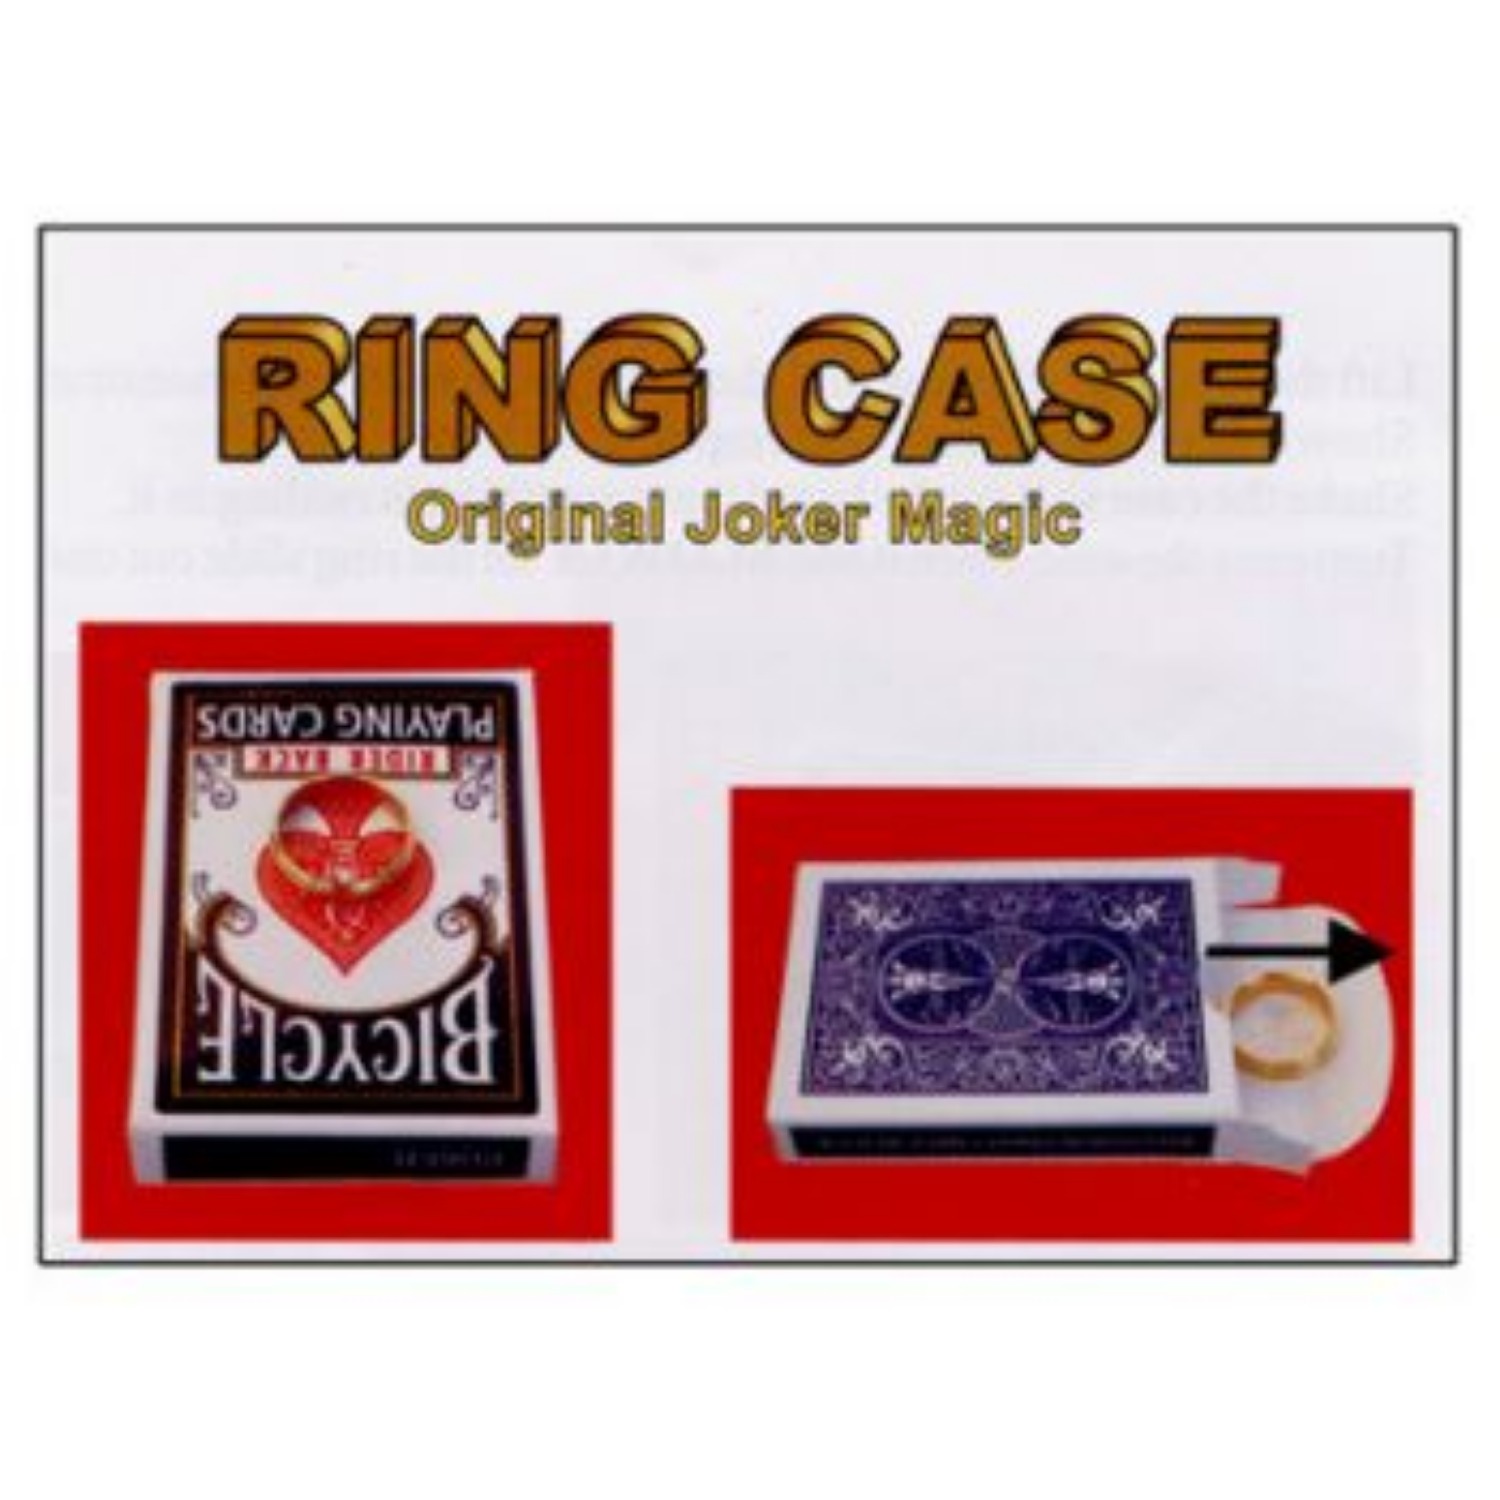 [매직 링케이스] Ring Case 관객의 반지를 순식간에 카드케이스 안으로 순간이동 시킬 수 있습니다.  (partyn)